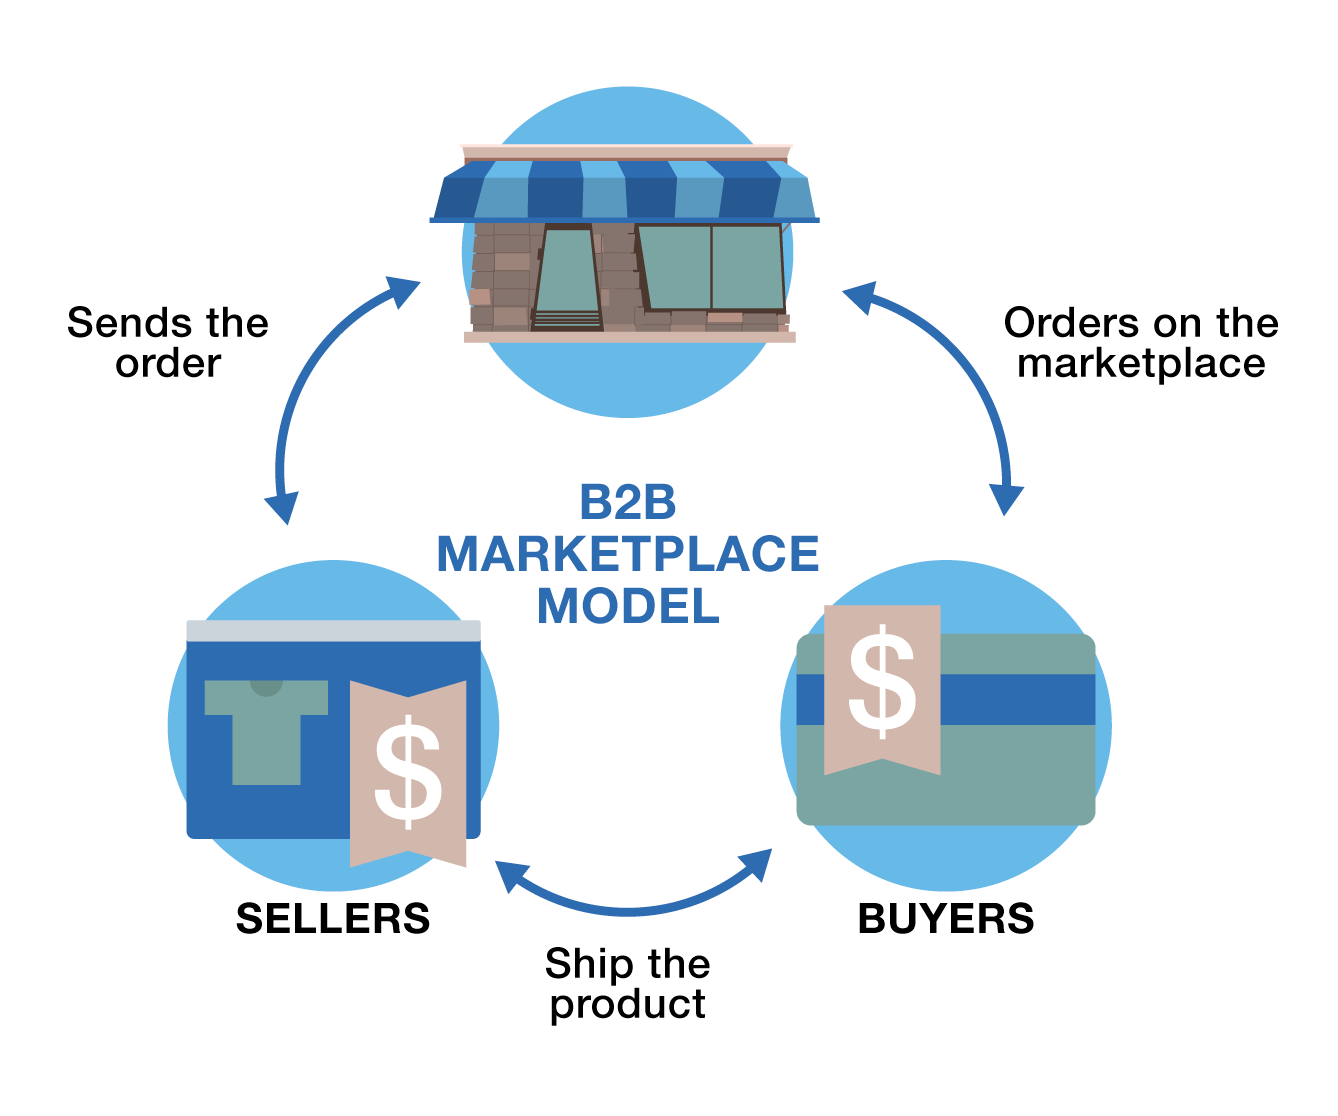 B2B portals and marketplaces